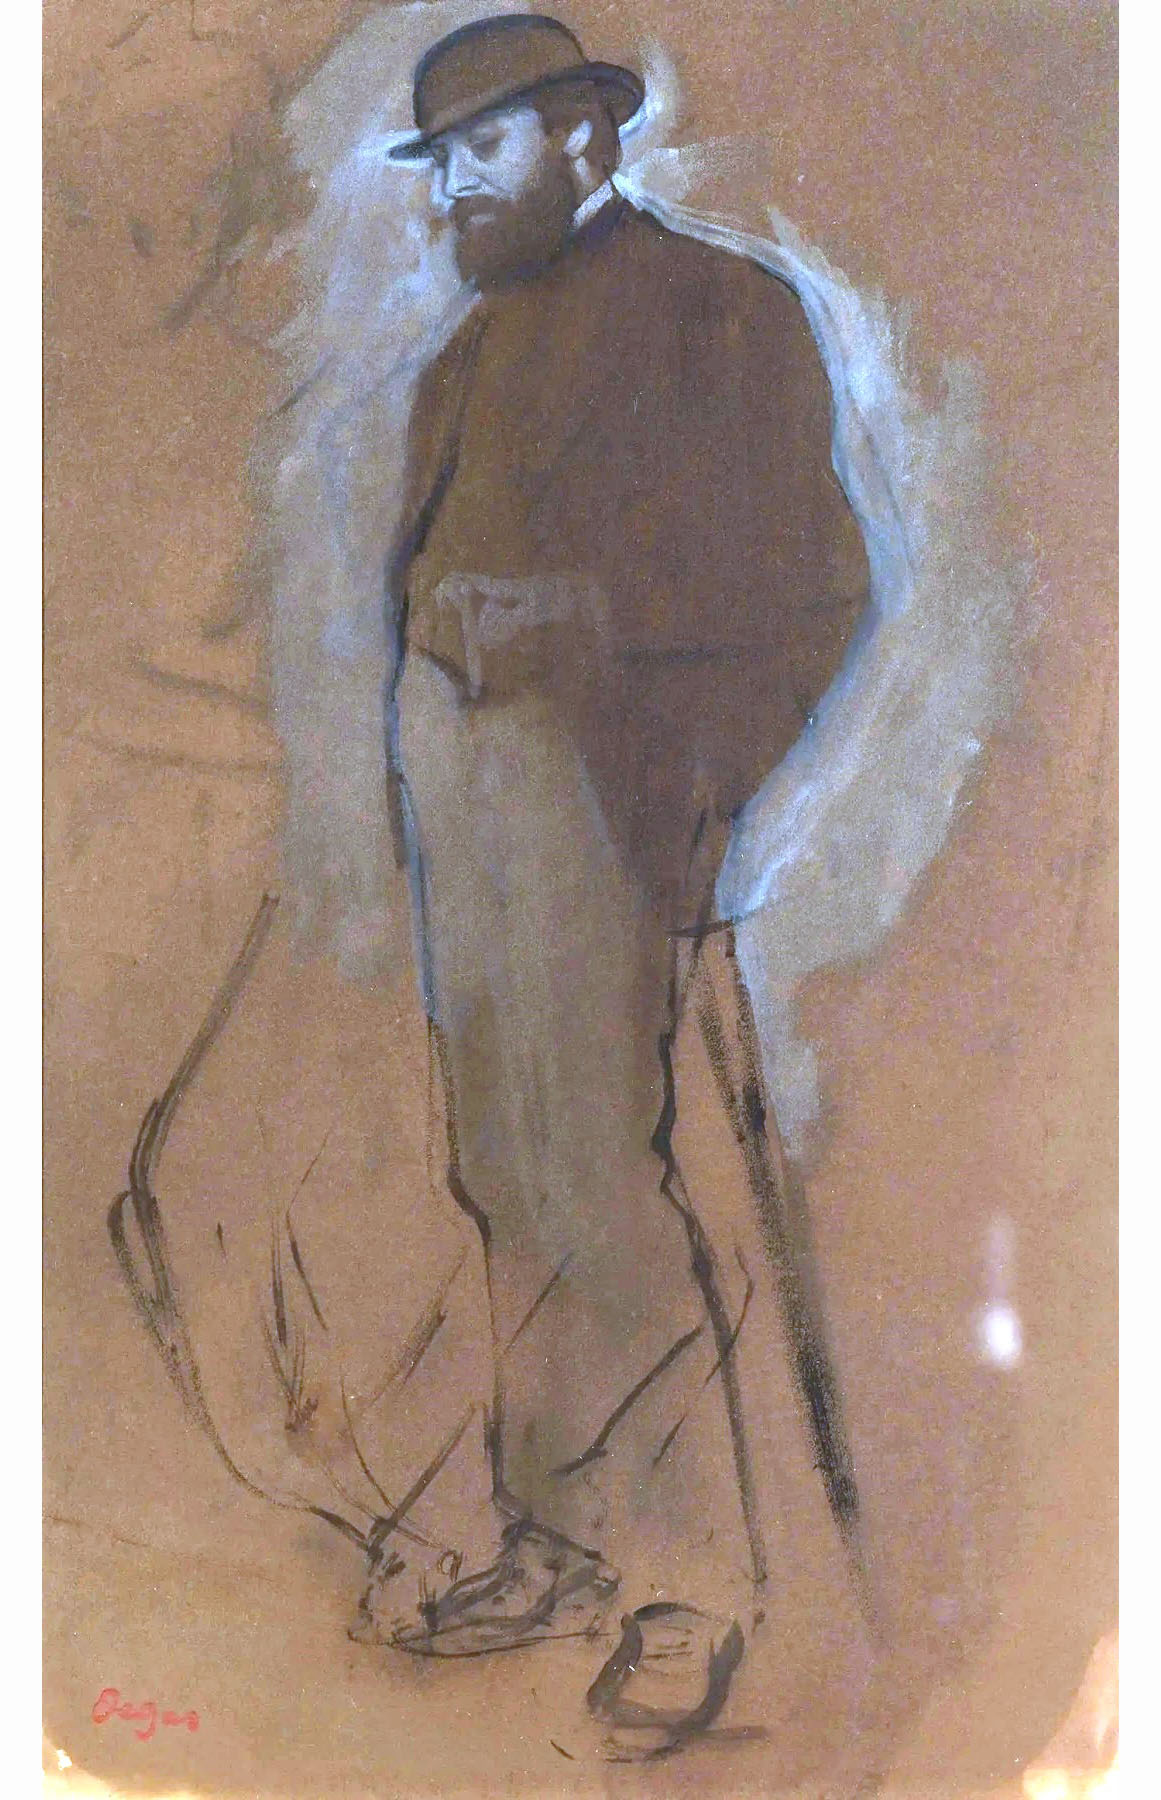 Эдгар Дега. "Портрет мужчины в котелке". 1870. Библиотека и музей Моргана, Нью-Йорк.